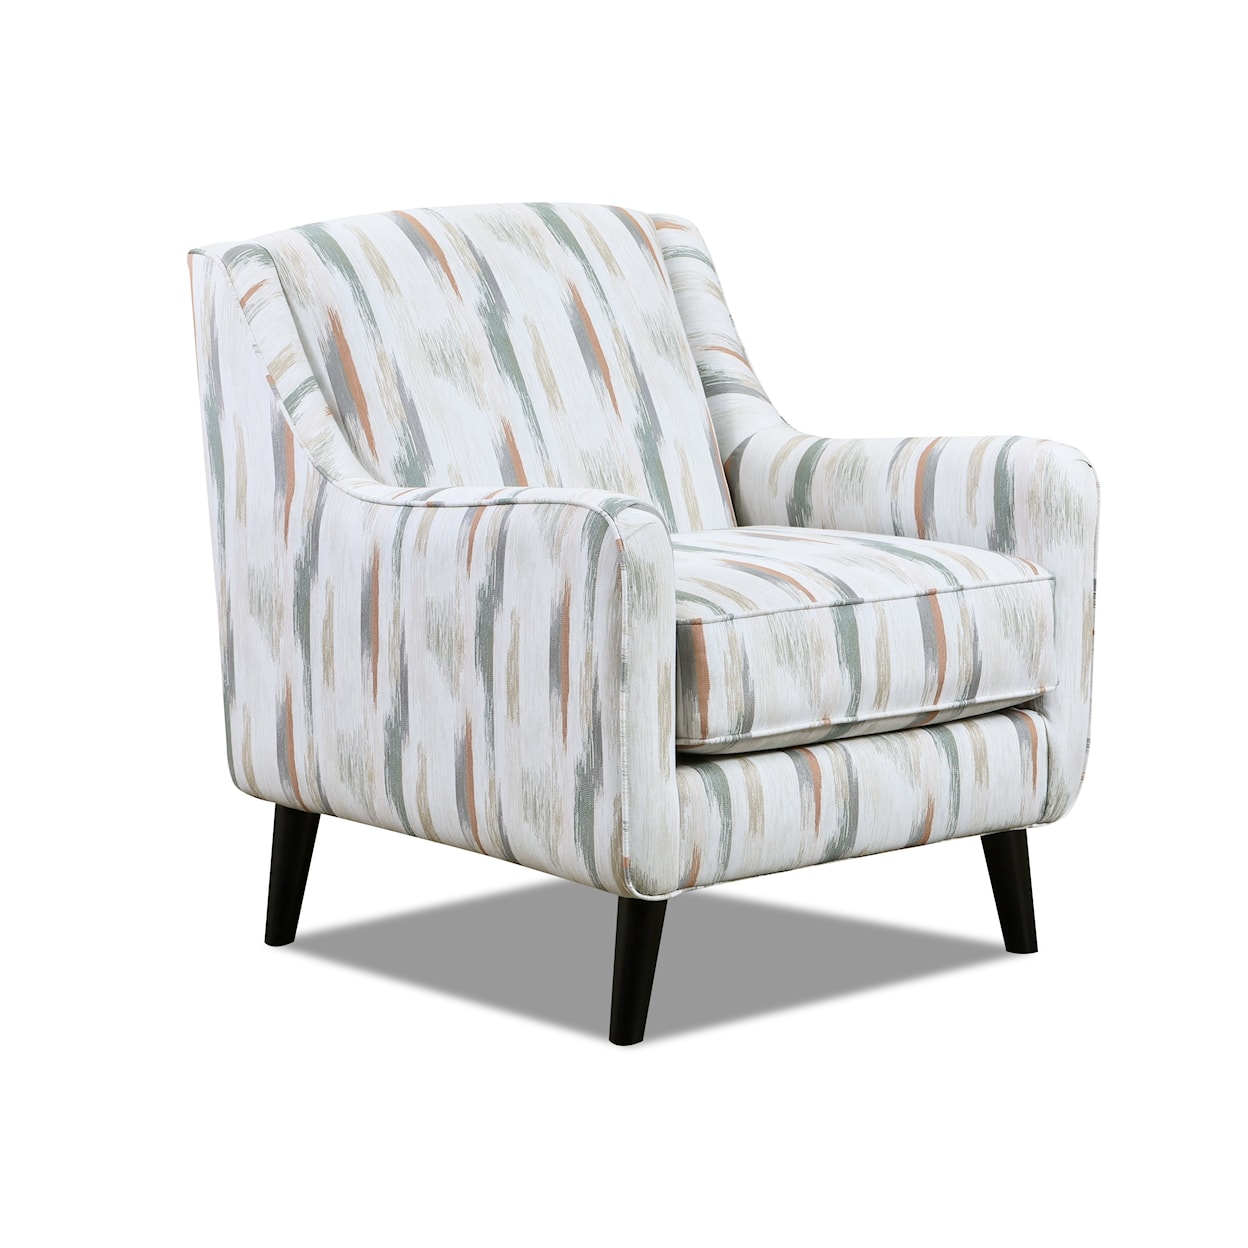 Fusion Furniture 7000 CHARLOTTE CREMINI Accent Chair